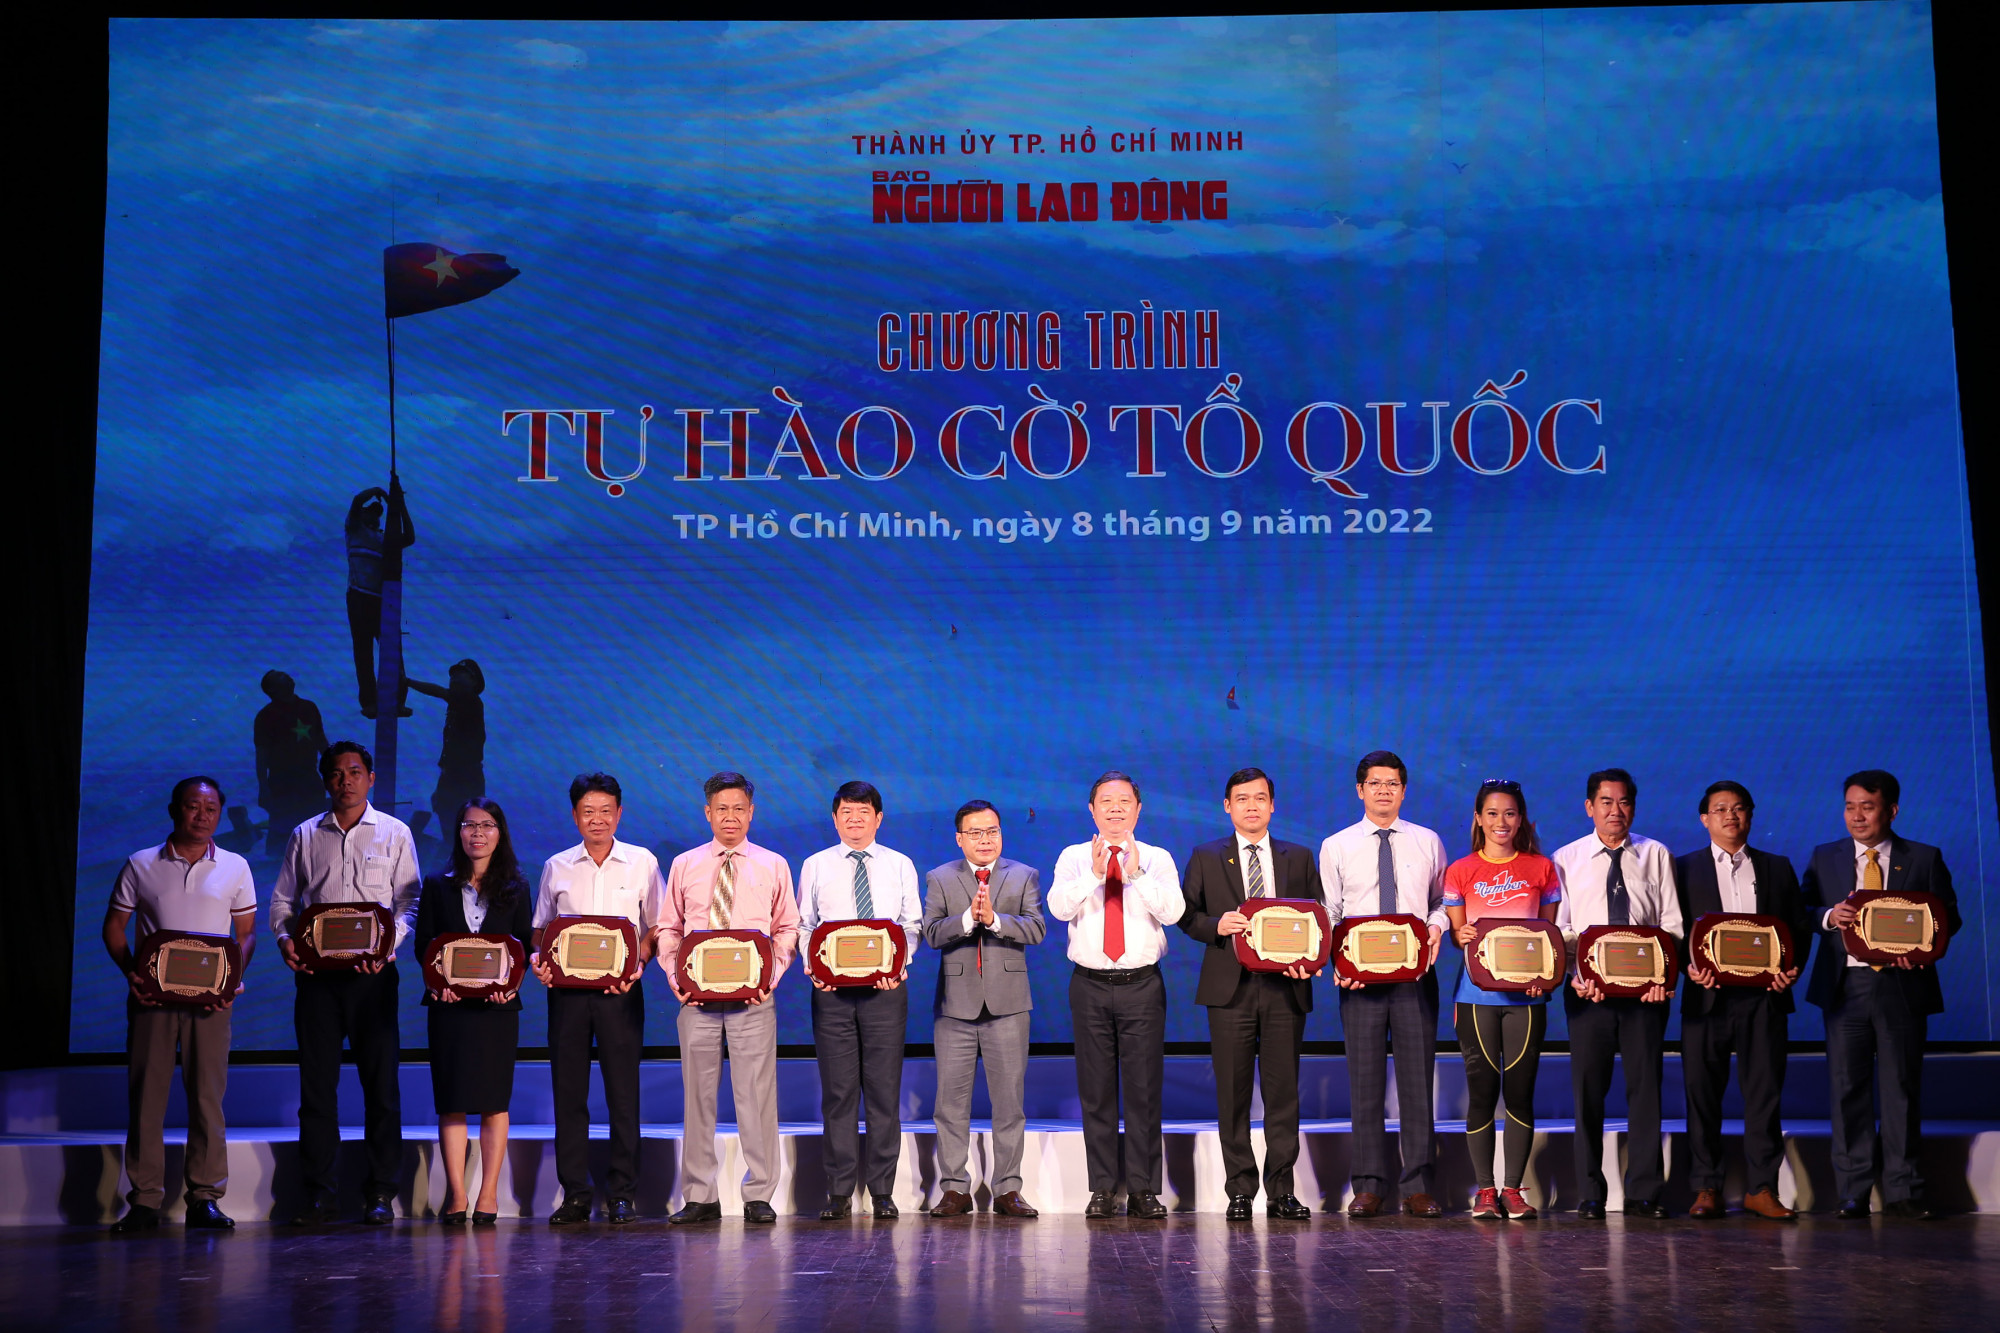 Đại diện các nhà tài trợ lên nhận bằng khen cảm ơn từ ban tổ chức chương trình “Một triệu lá cờ Tổ quốc cùng ngư dân bám biển” - Ảnh: Him Lam Land